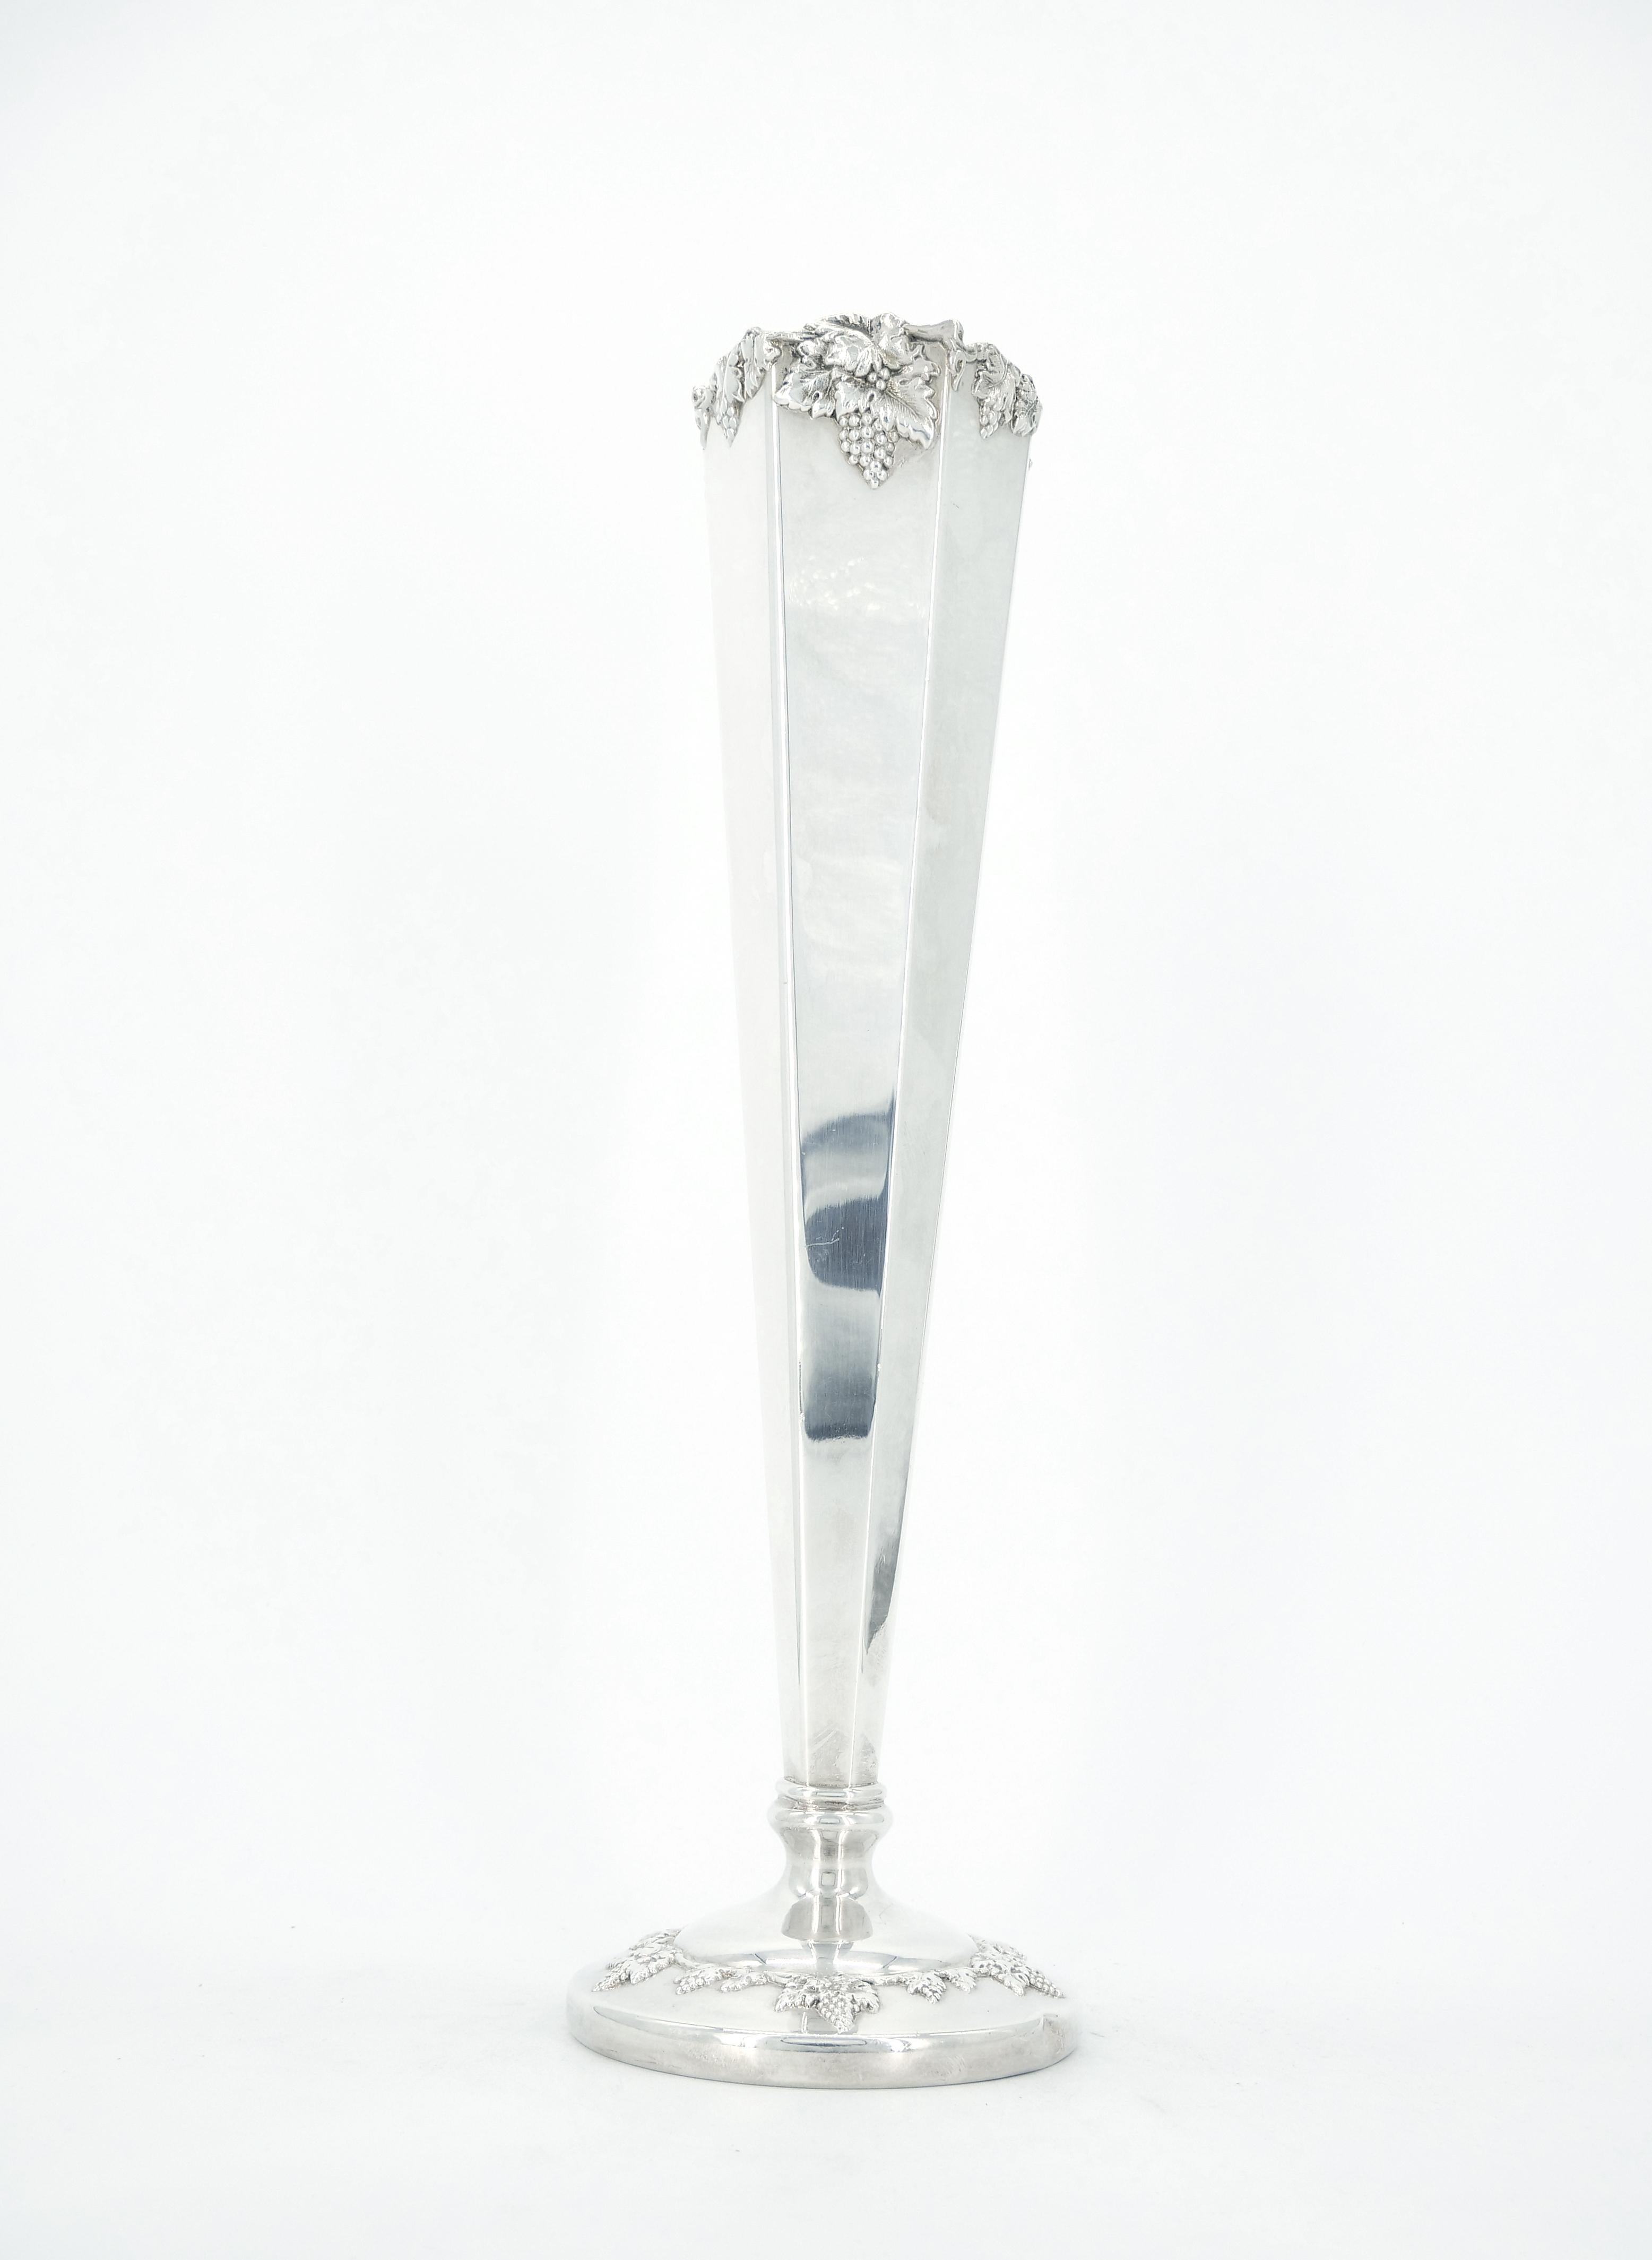 Grand vase hexagonal conique en métal argenté de Lawrence B. Smith Company de Boston, Massachusetts, avec un fin motif de vigne répété décorant le bord et le pied.  Fondée en 1887, l'entreprise a fonctionné jusque dans les années 1950.  5 pouces de